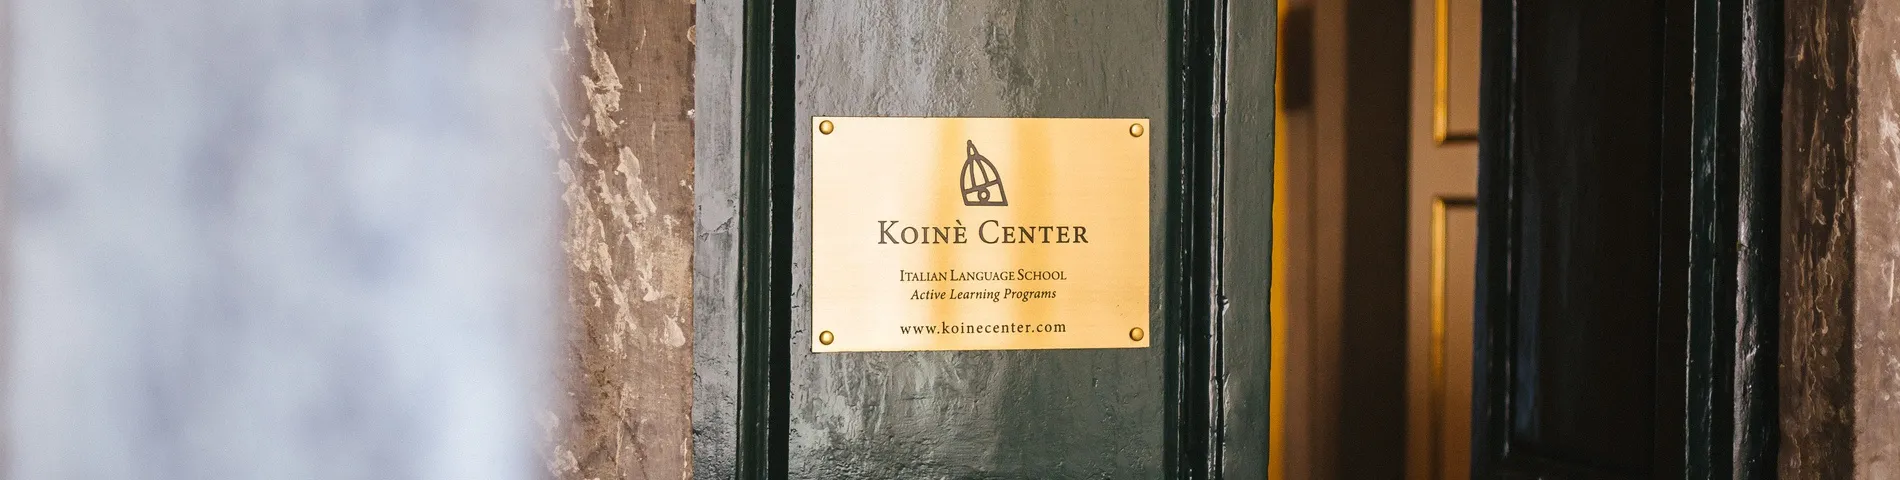 Imagen 1 de la escuela Centro Koinè